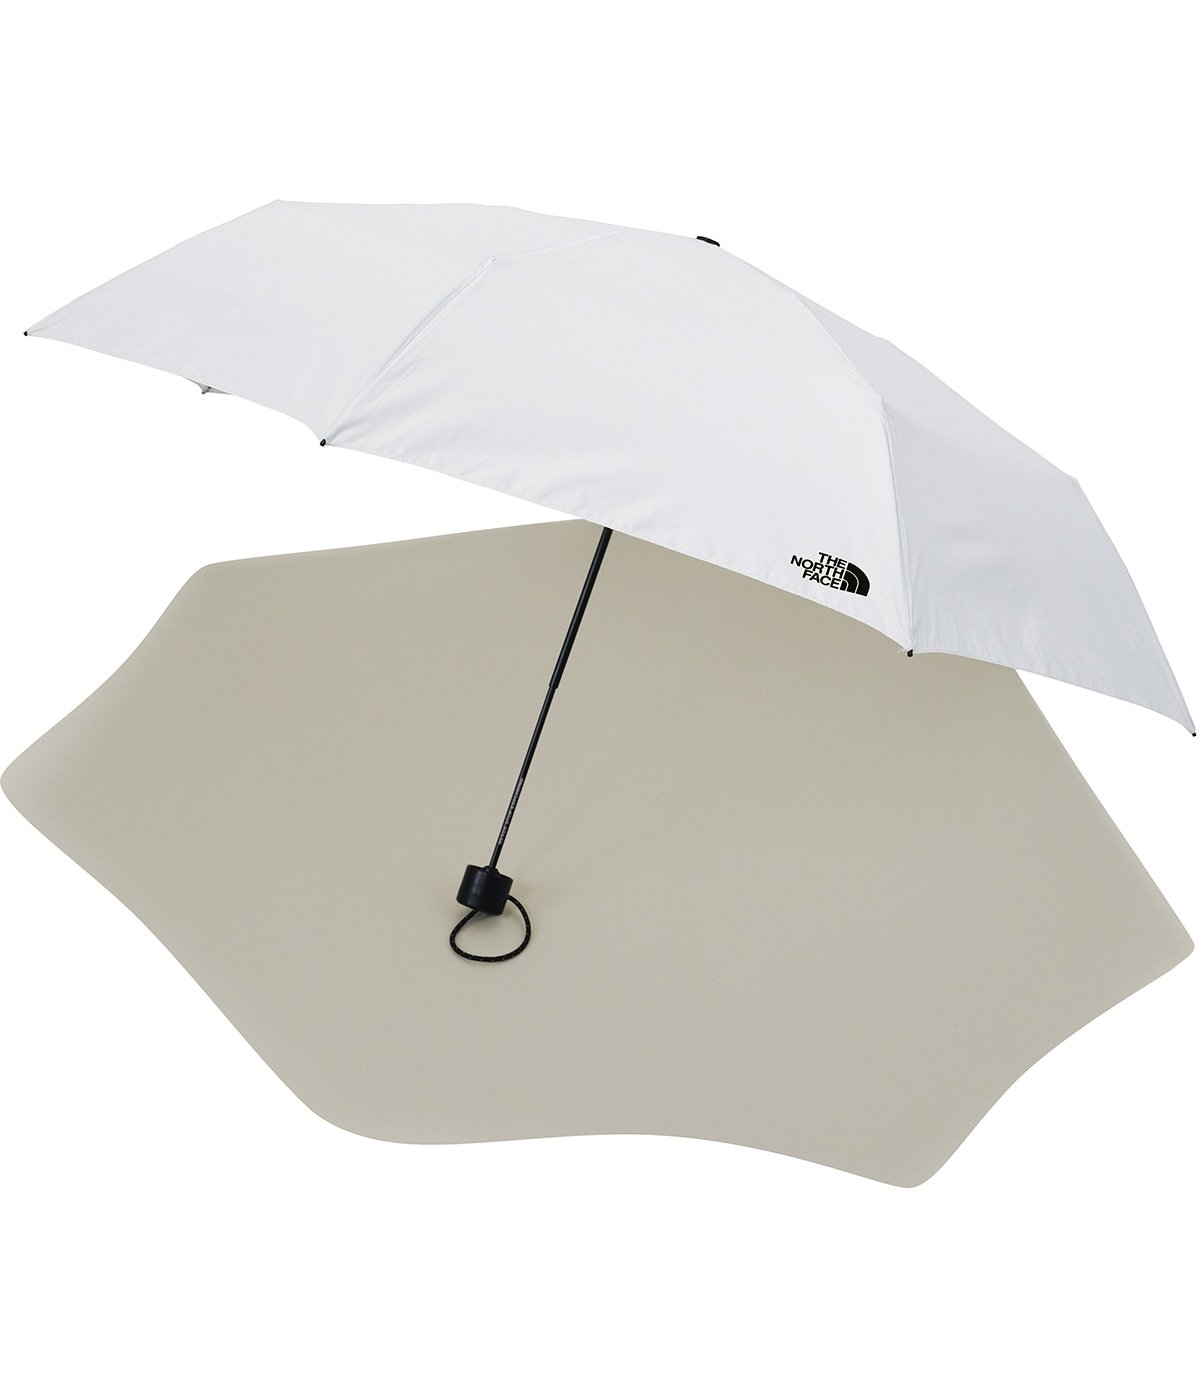 Module Umbrella | THE NORTH FACE(ザ ノースフェイス) / 生活雑貨 傘